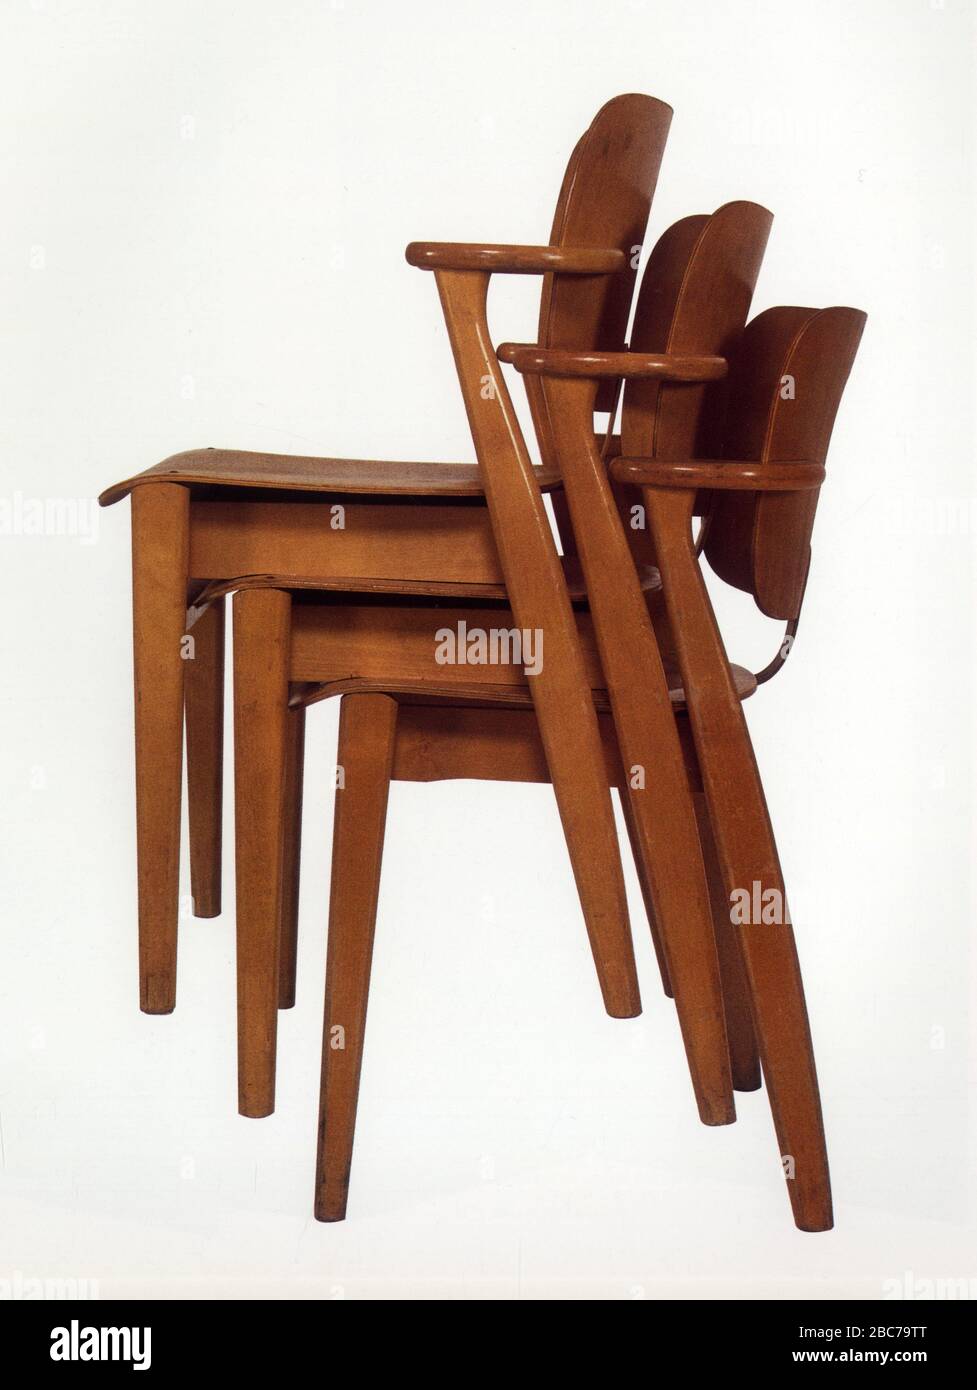 Trois chaises modernes empilées Stock Photo